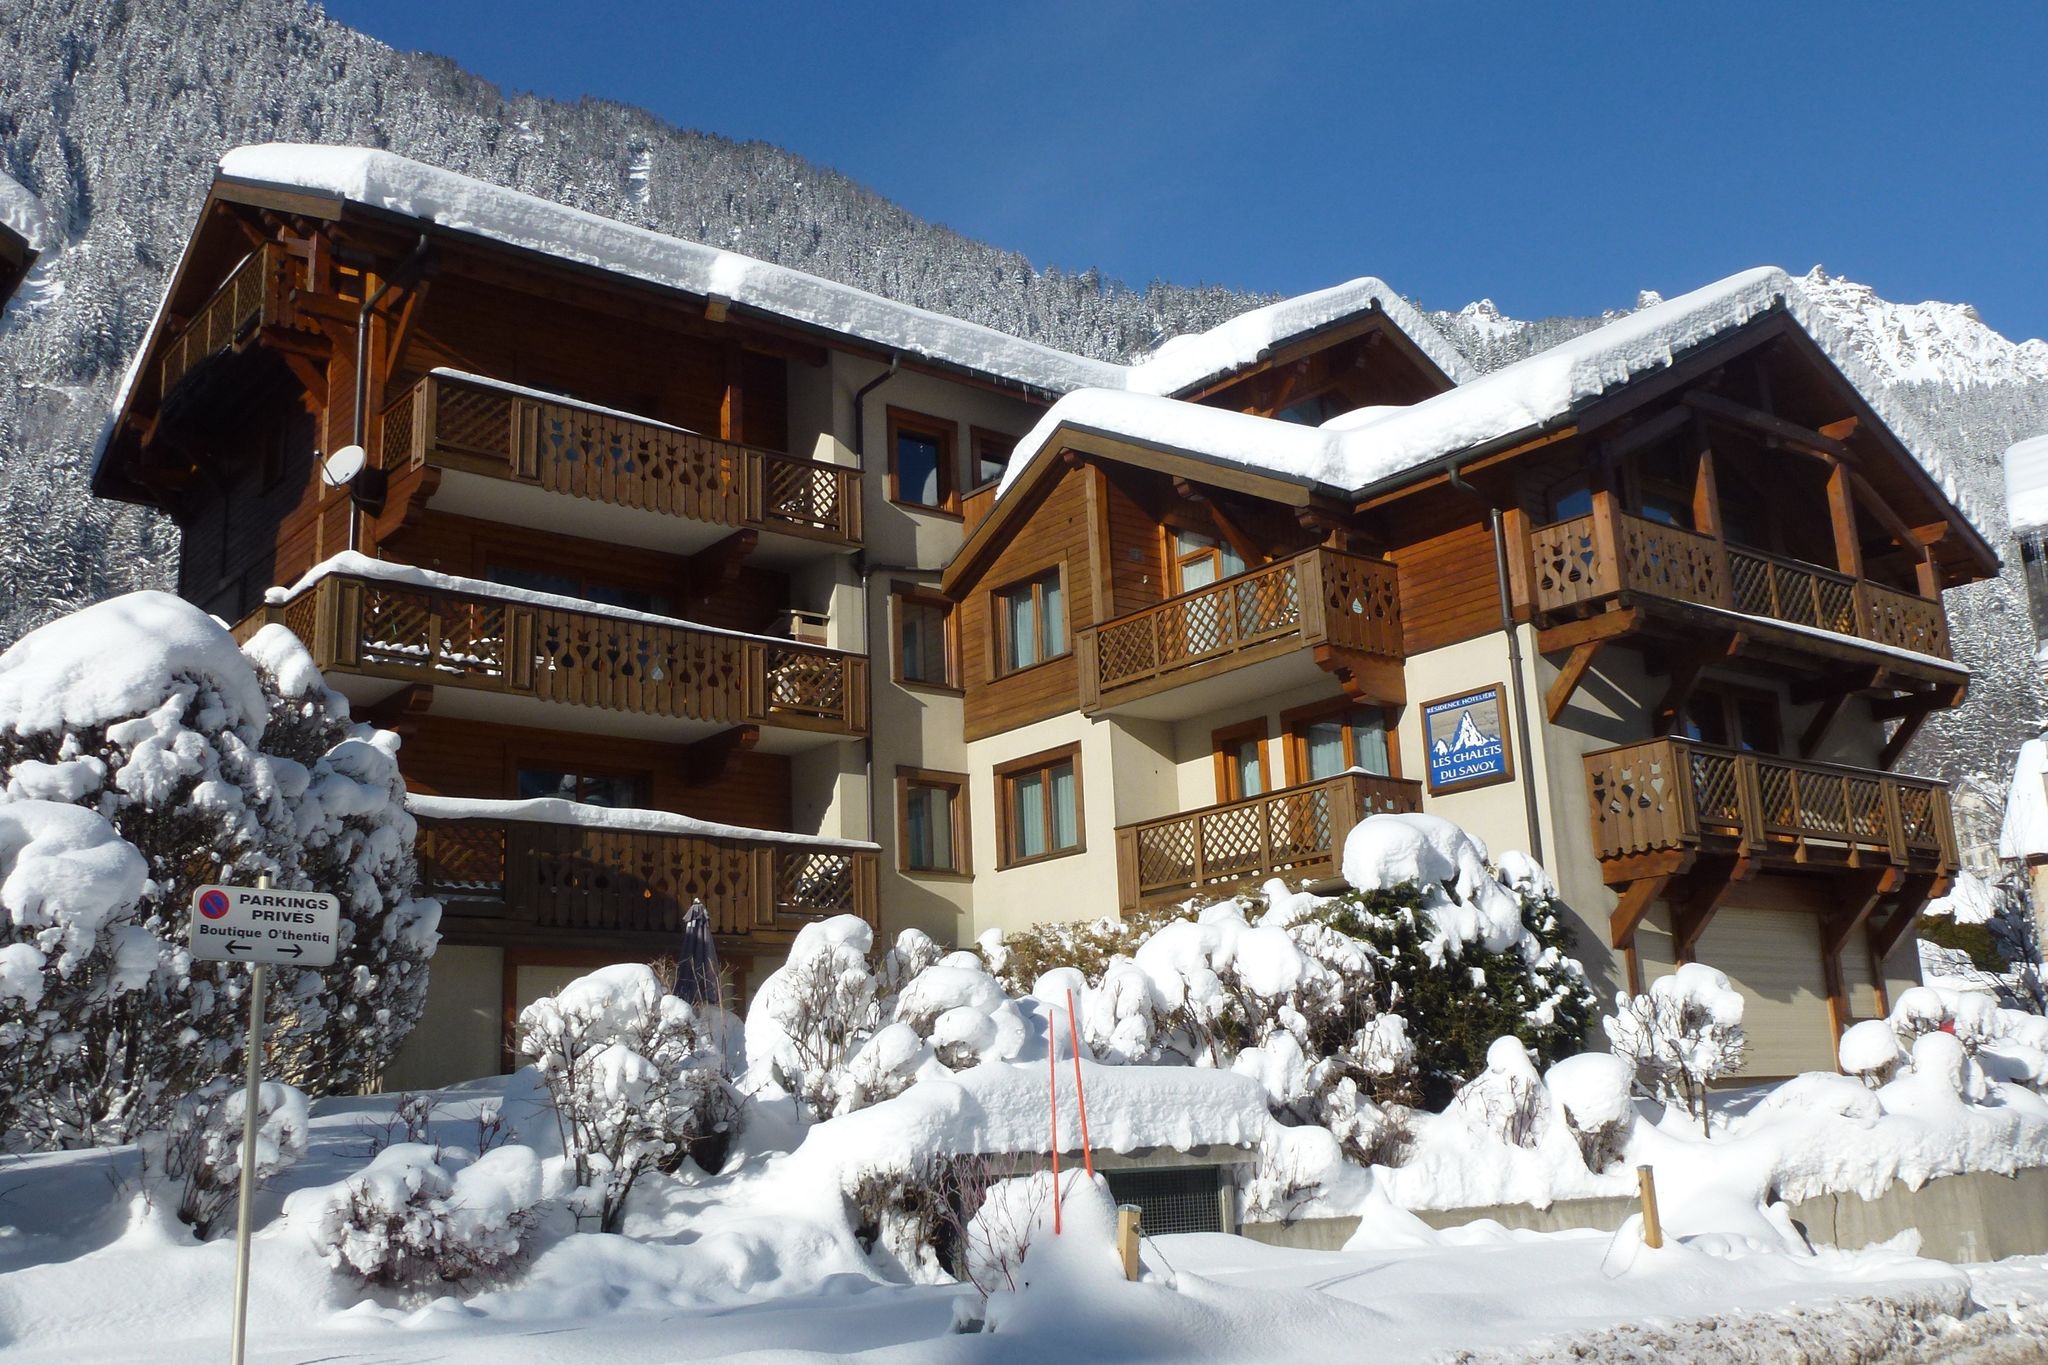 Modern vakantieappartement in Chamonix nabij de skilift